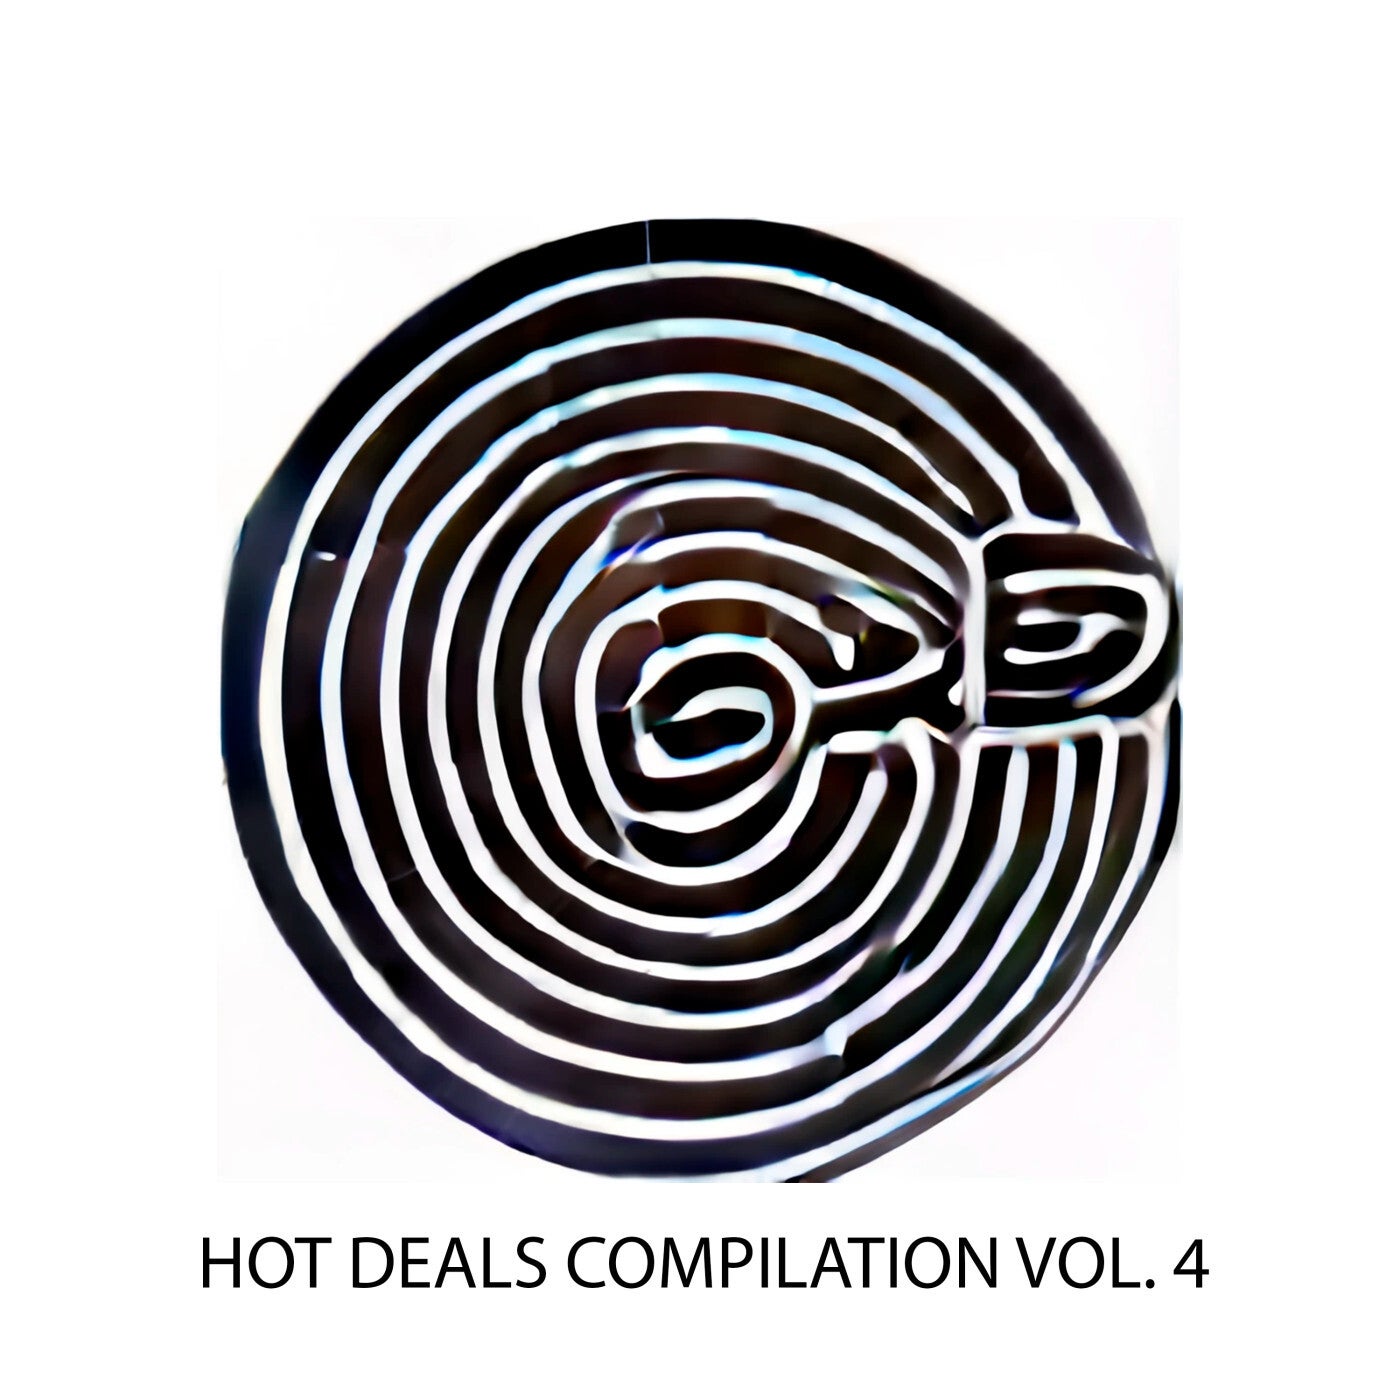 Hot Deals Compilation Vol. 4